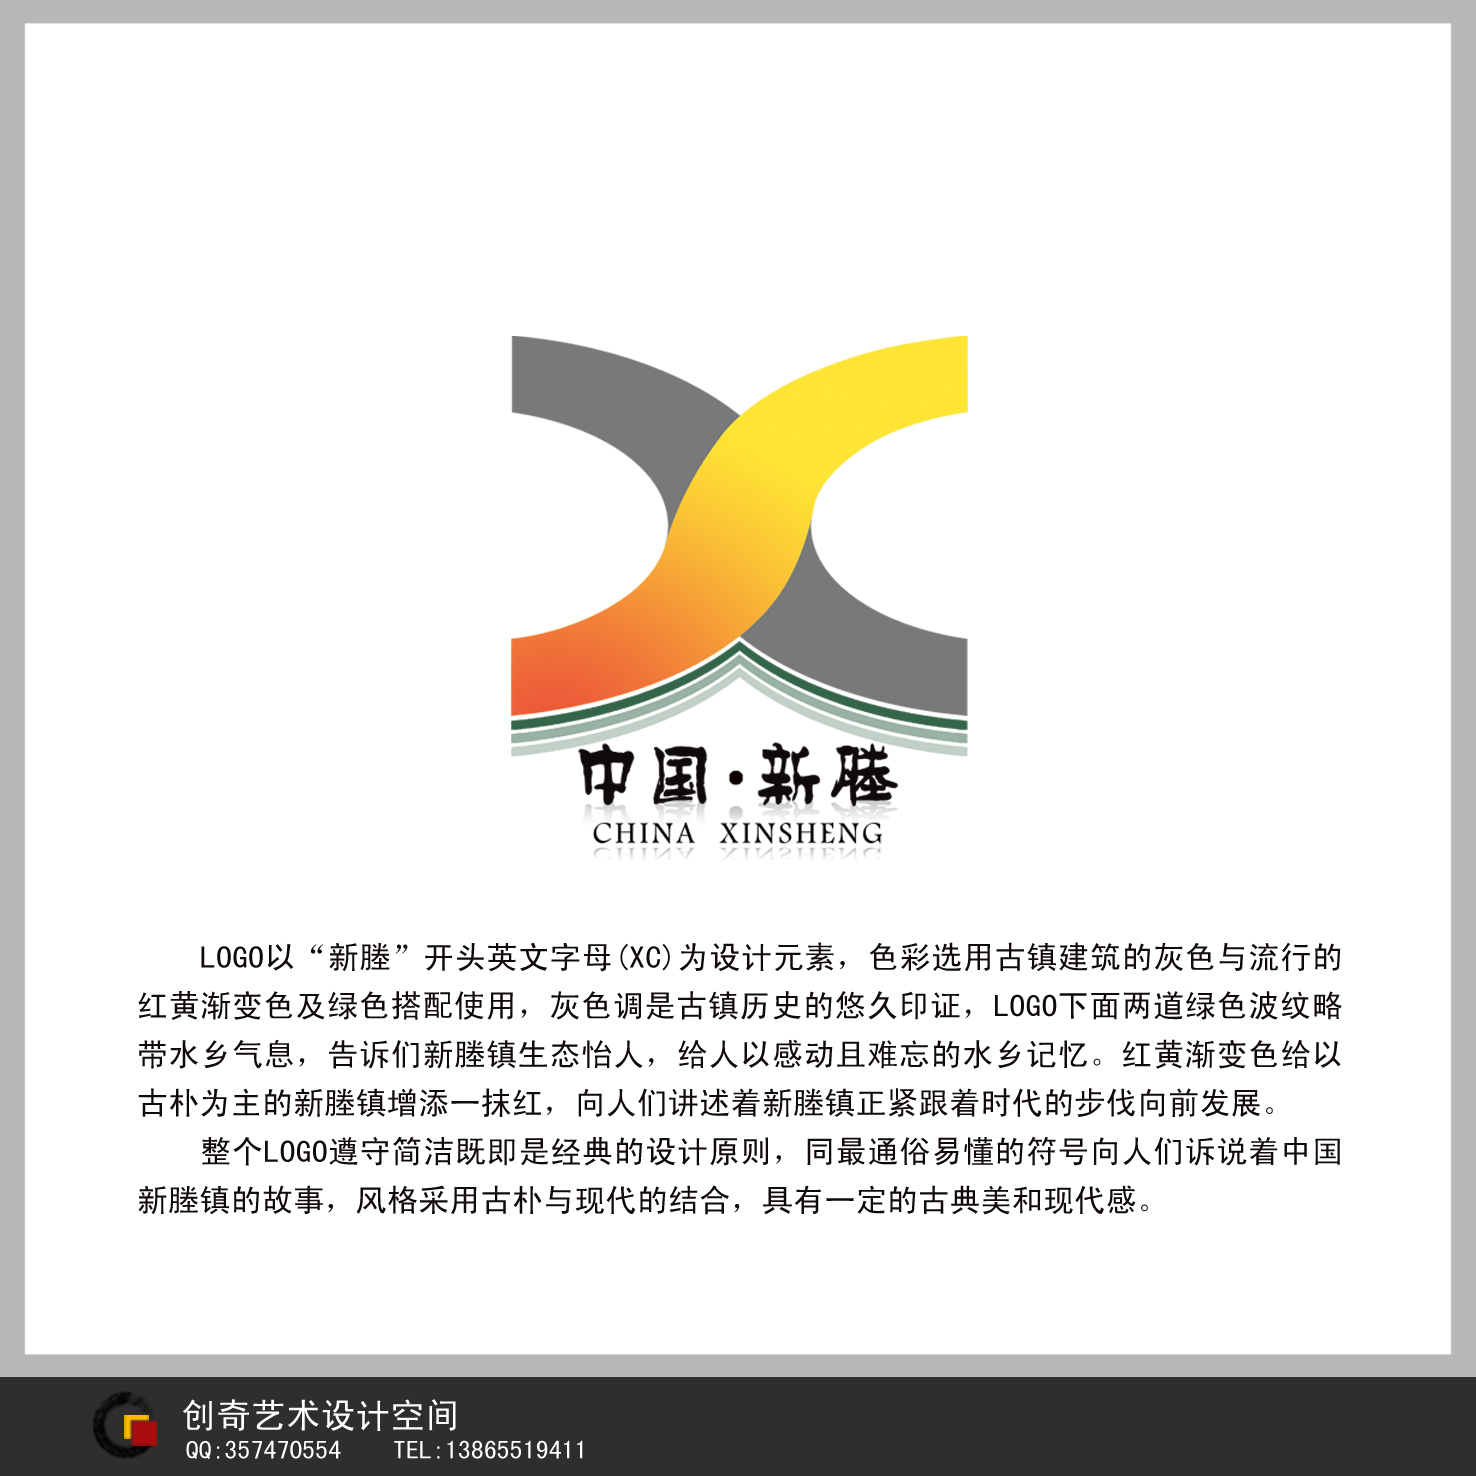 浙江省嘉兴市新塍镇形象 标志 (logo)及vi征集